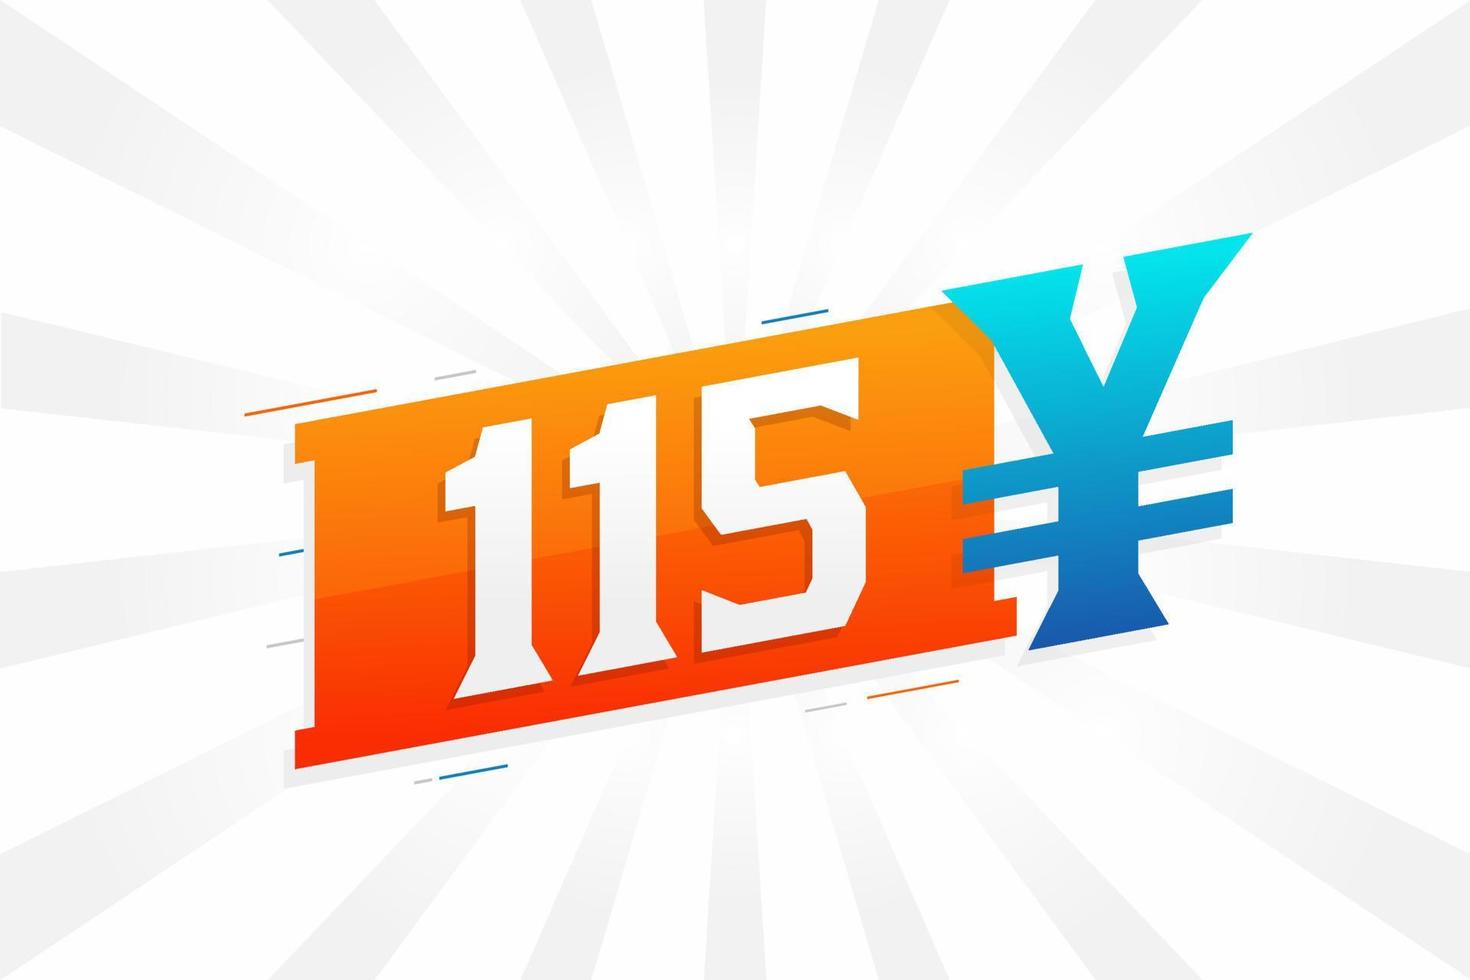 Símbolo de texto de vetor de moeda chinesa de 115 yuan. Vetor de estoque de dinheiro de moeda japonesa de 115 ienes